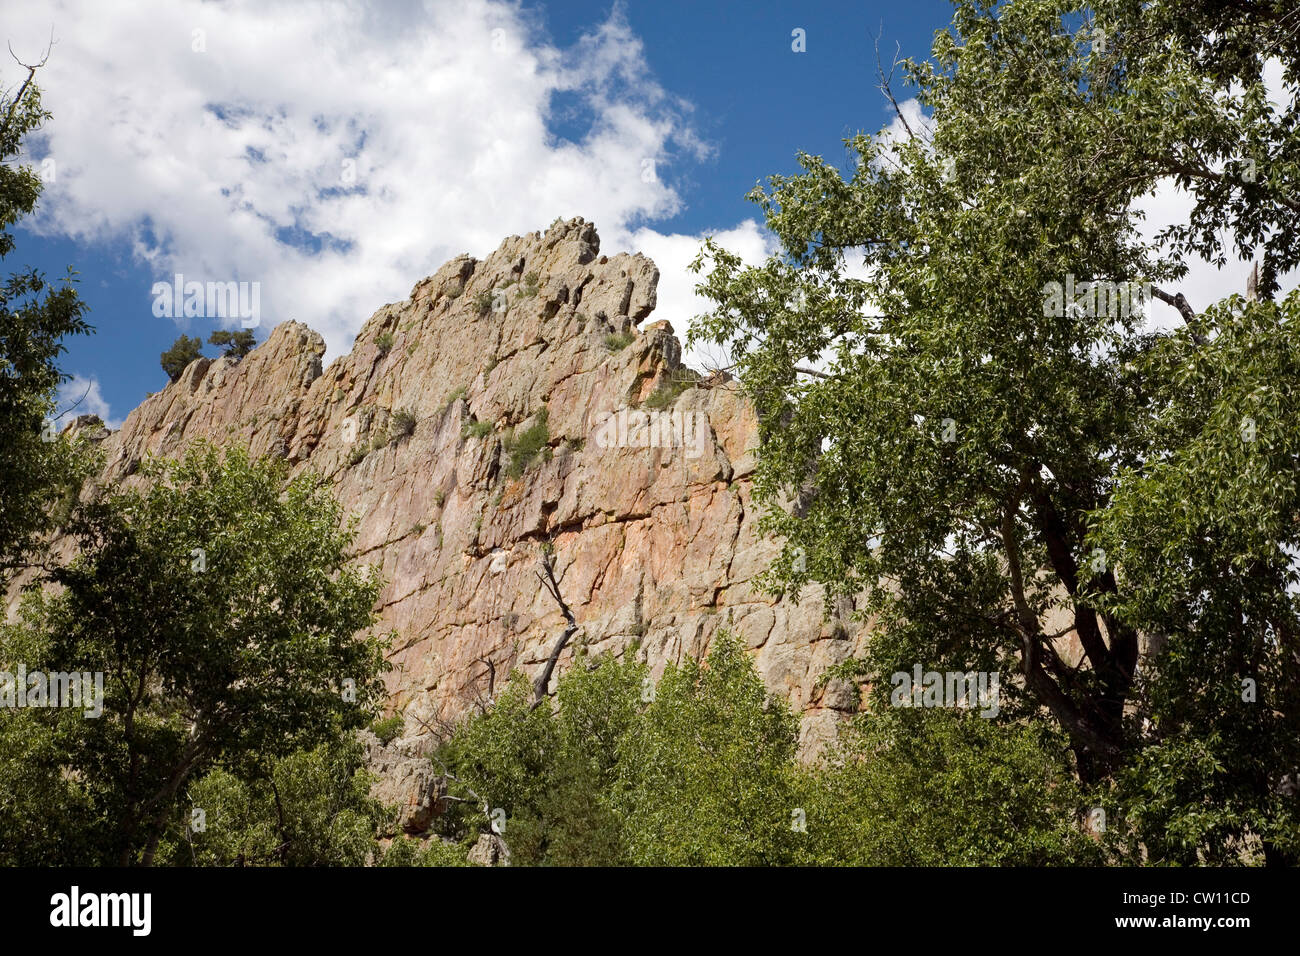 Un récif de roches d'un ranch dans le cadre des pics espagnol Wilderness Area de south central au Colorado. Usage éditorial uniquement. Banque D'Images